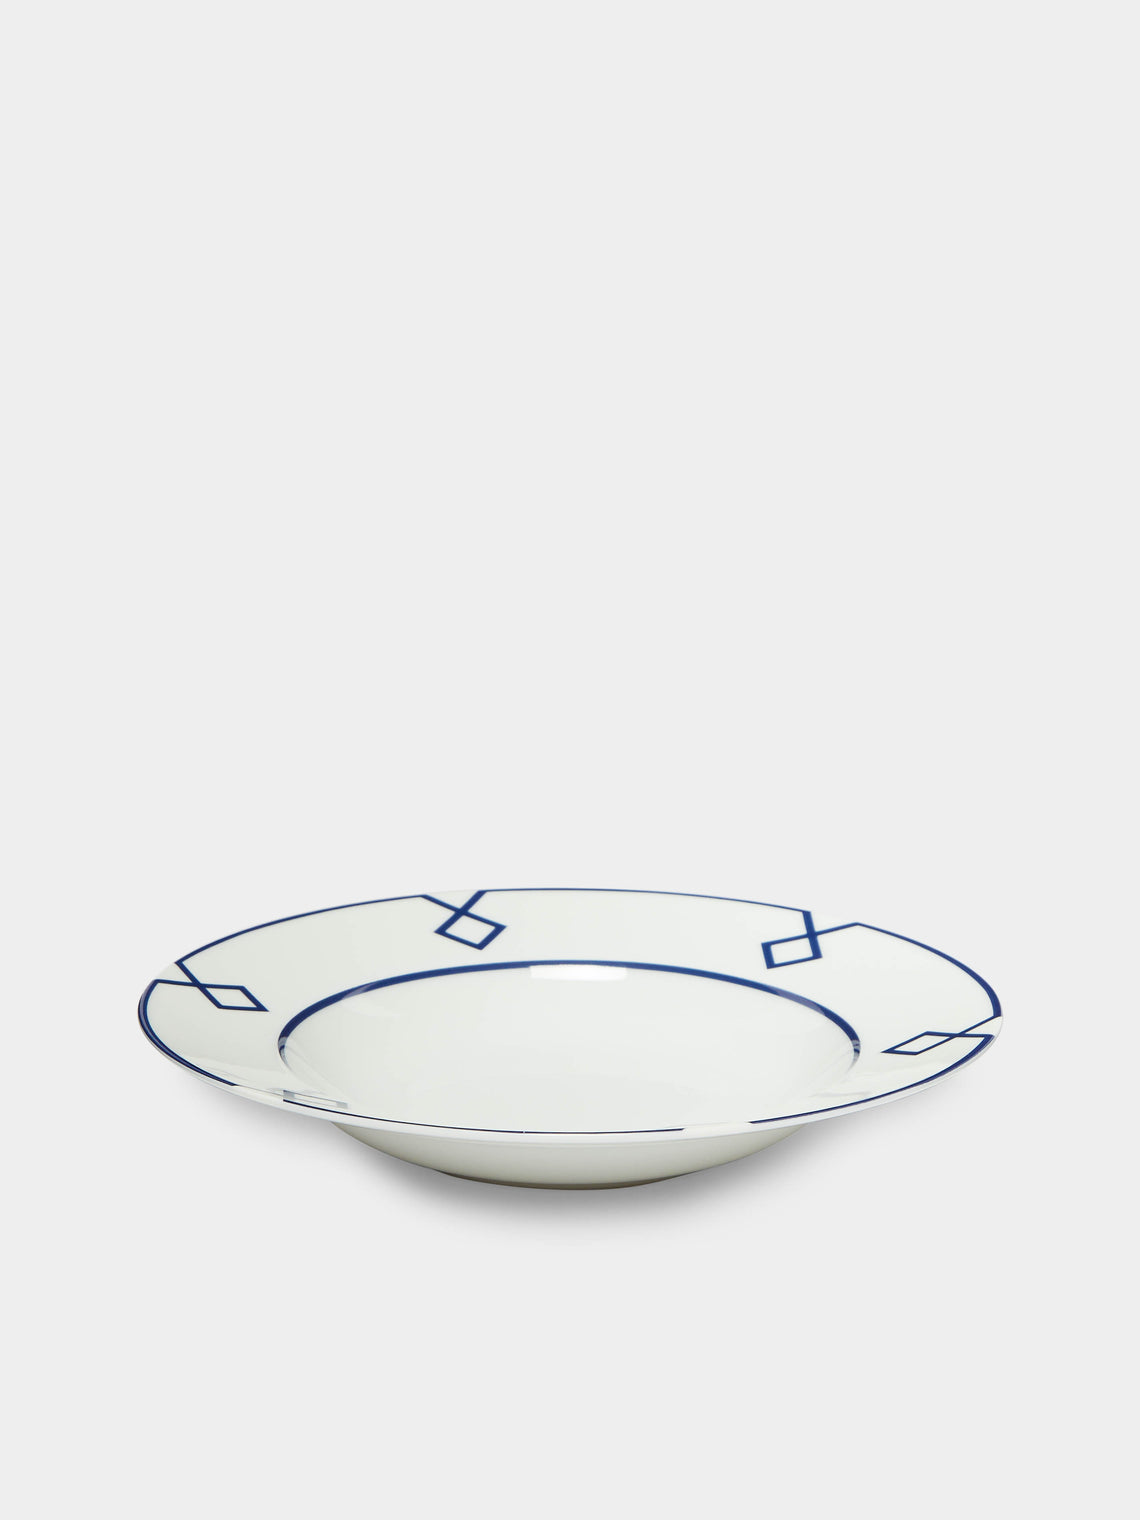 Emilia Wickstead - Naples Porcelain Soup Bowl -  - ABASK